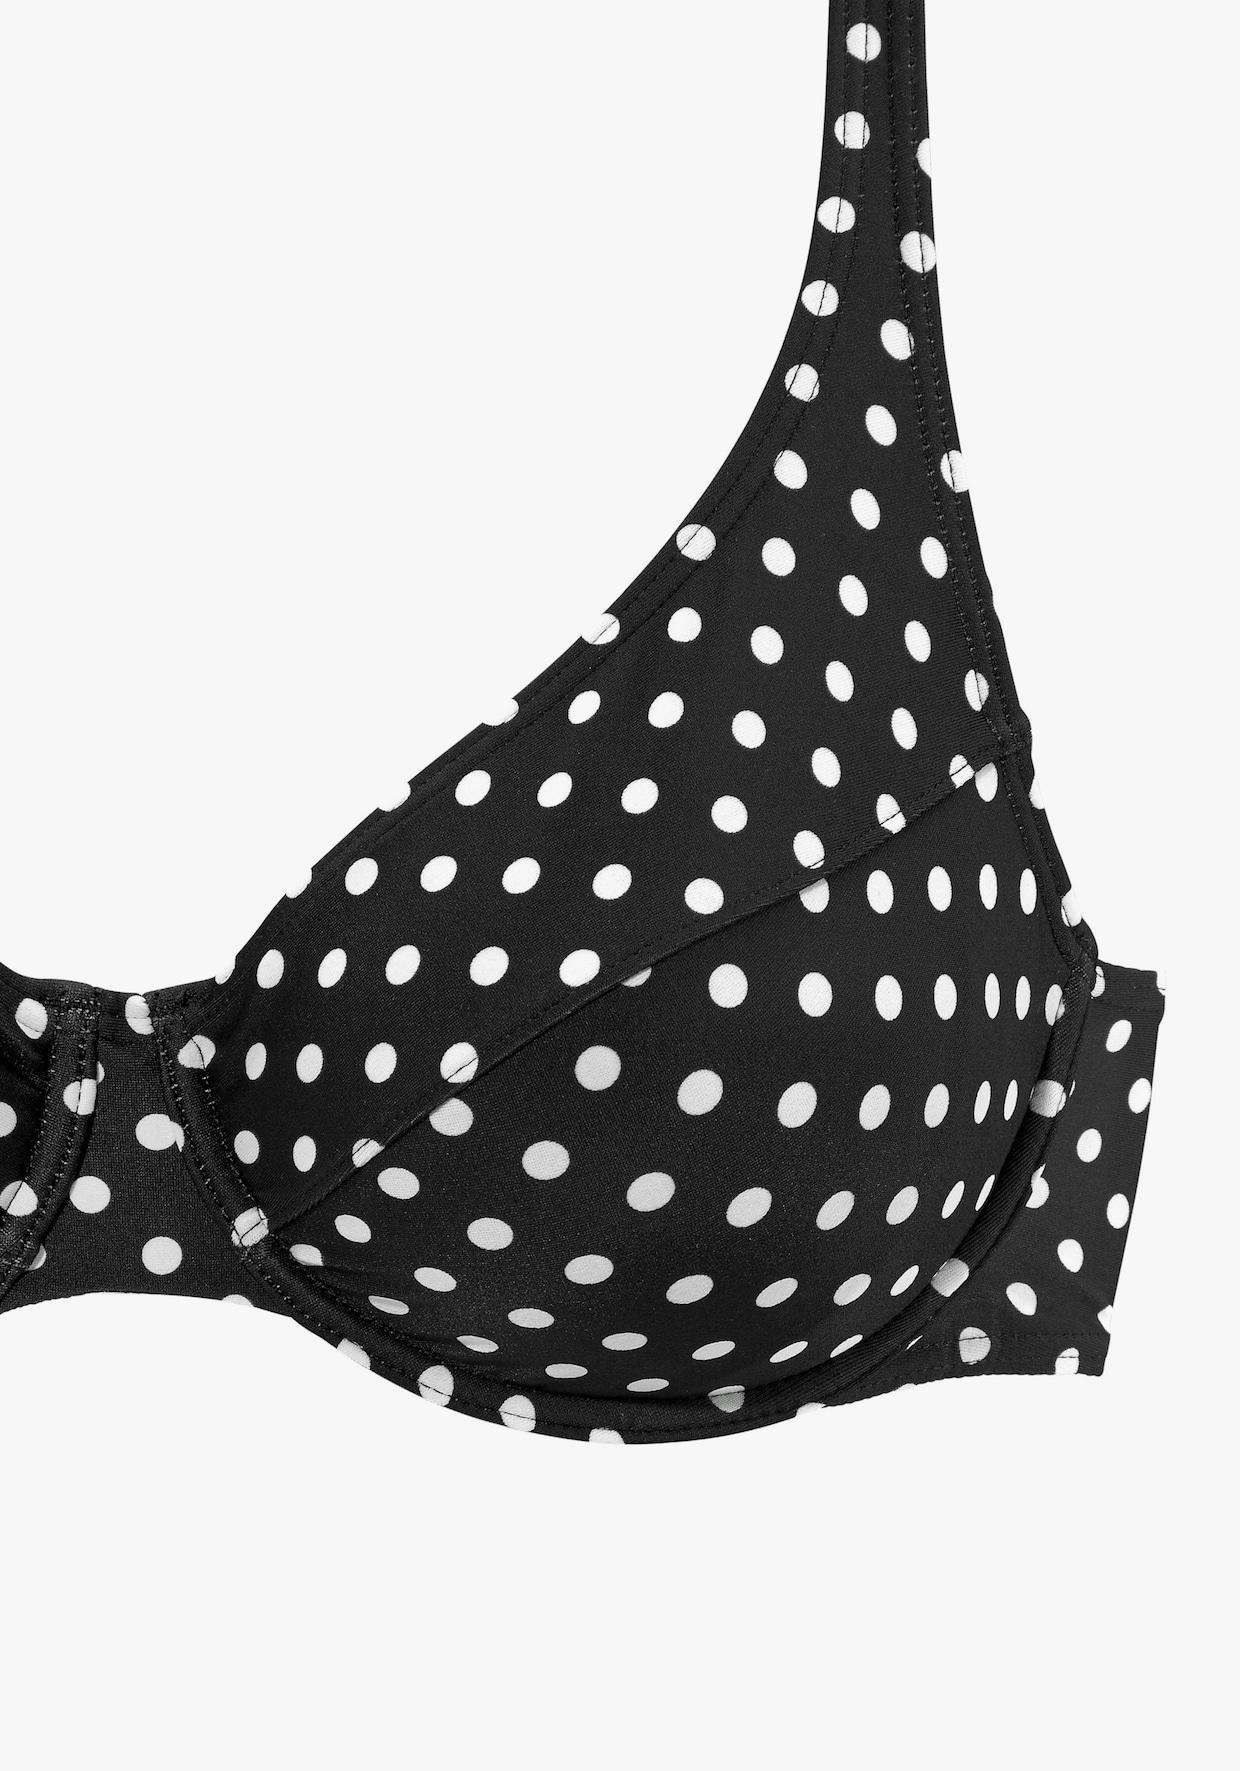 LASCANA Bügel-Bikini - schwarz-weiß